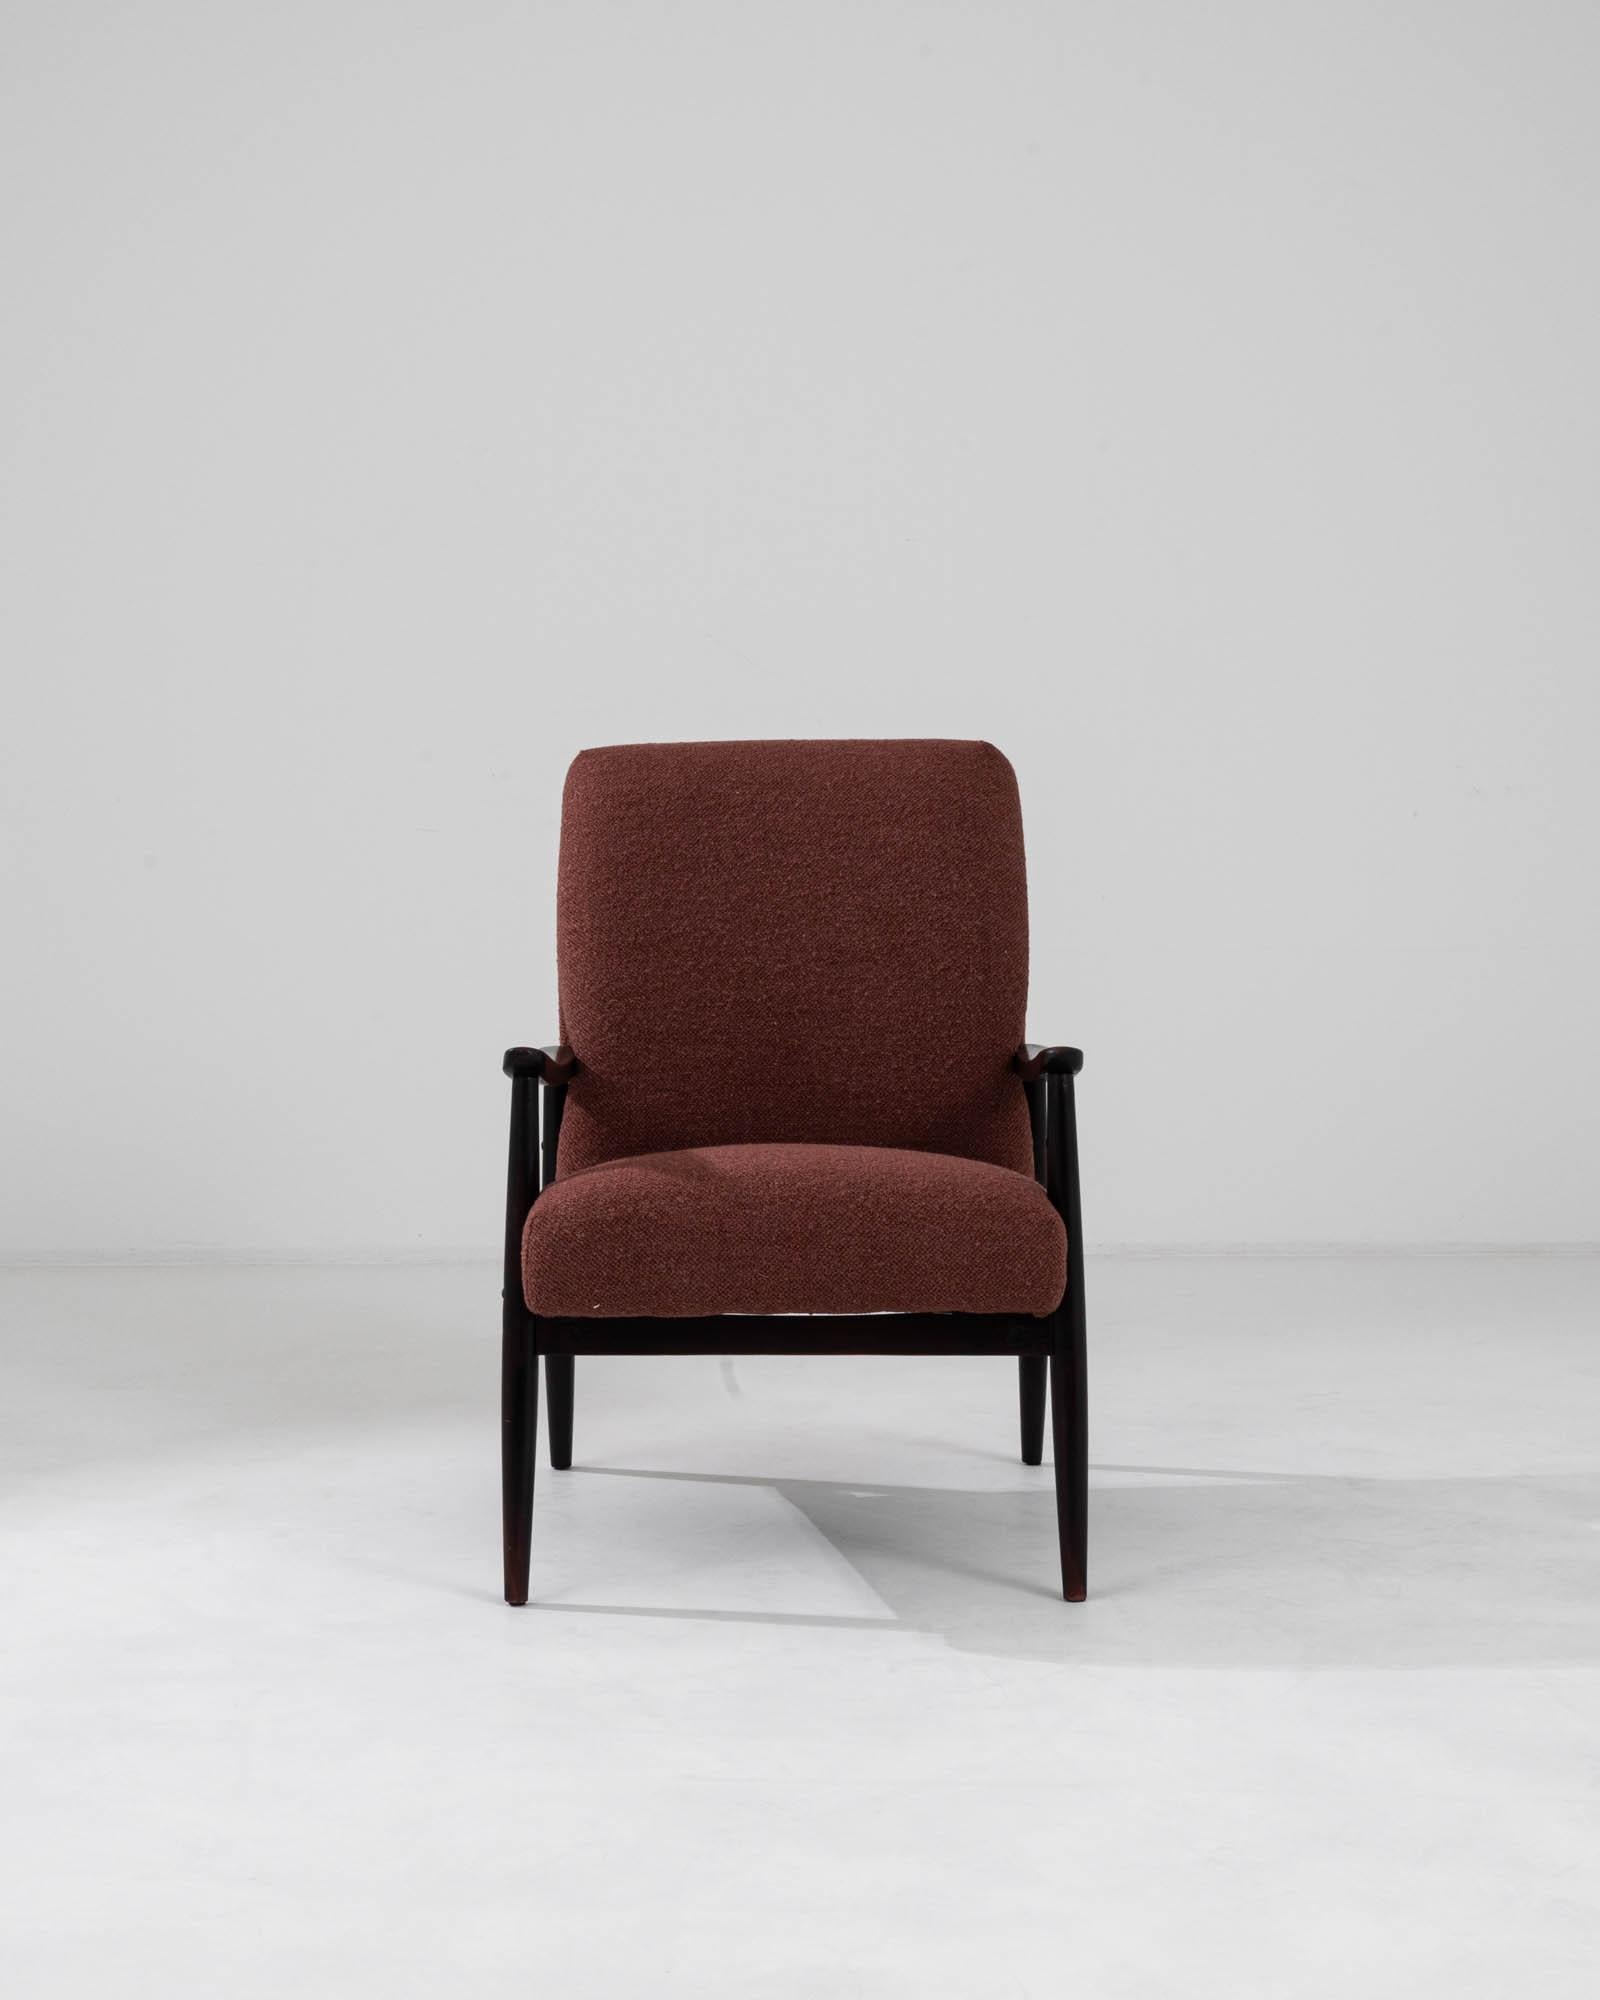 Ce fauteuil rembourré a été produit en Tchécoslovaquie, vers 1960. Tapissé d'un tissu grenat, la légère inclinaison et l'assise rembourrée permettent une posture confortable. Contrastant avec le cadre sombre et anguleux, l'assise pelucheuse crée une